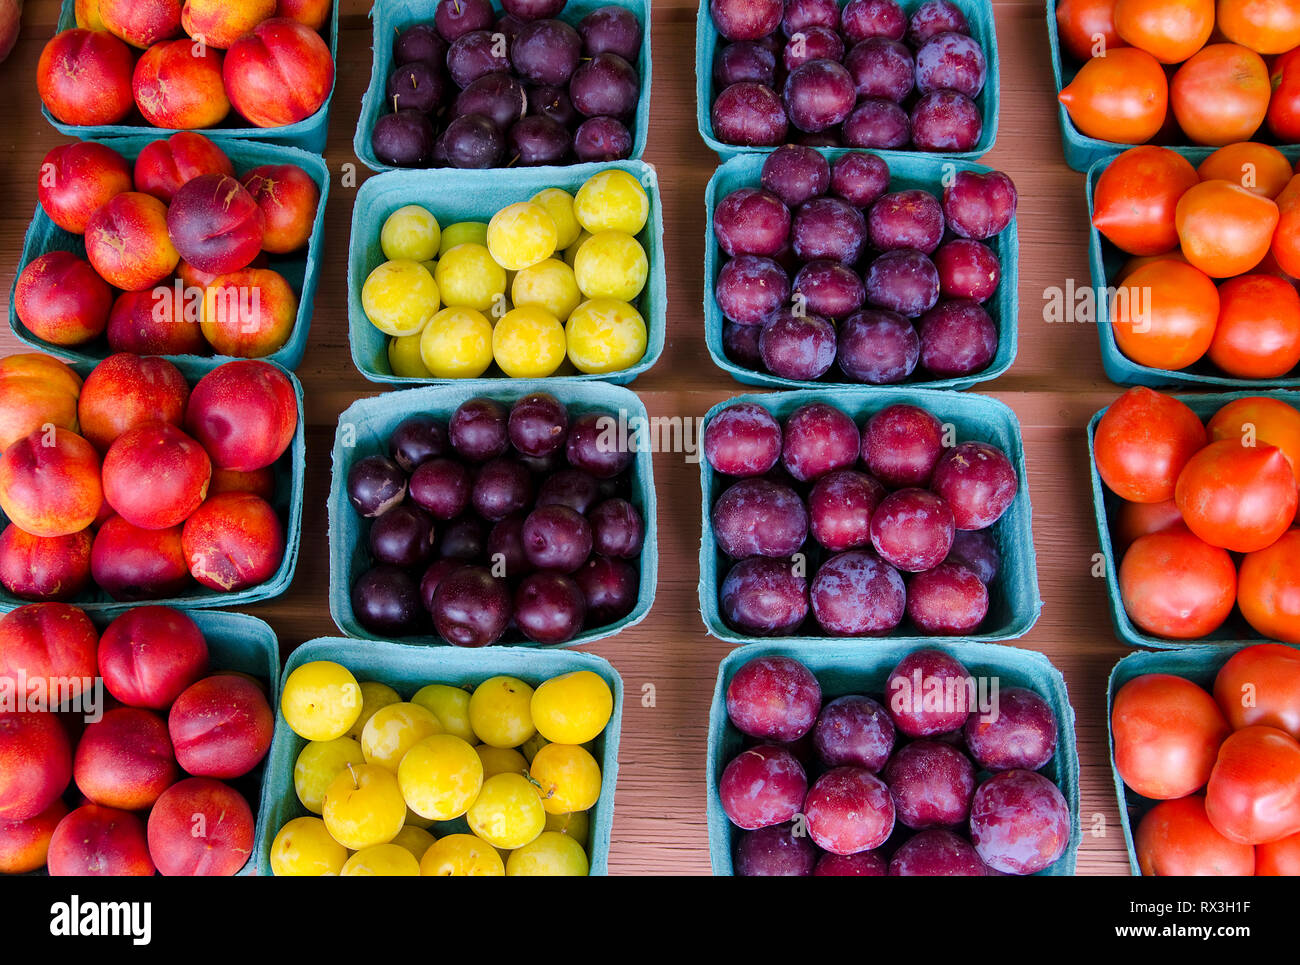 Les prunes et fruits trouvés à un stand de fruits à Keremeos, British Columbia, Canada au cours de l'été. Banque D'Images